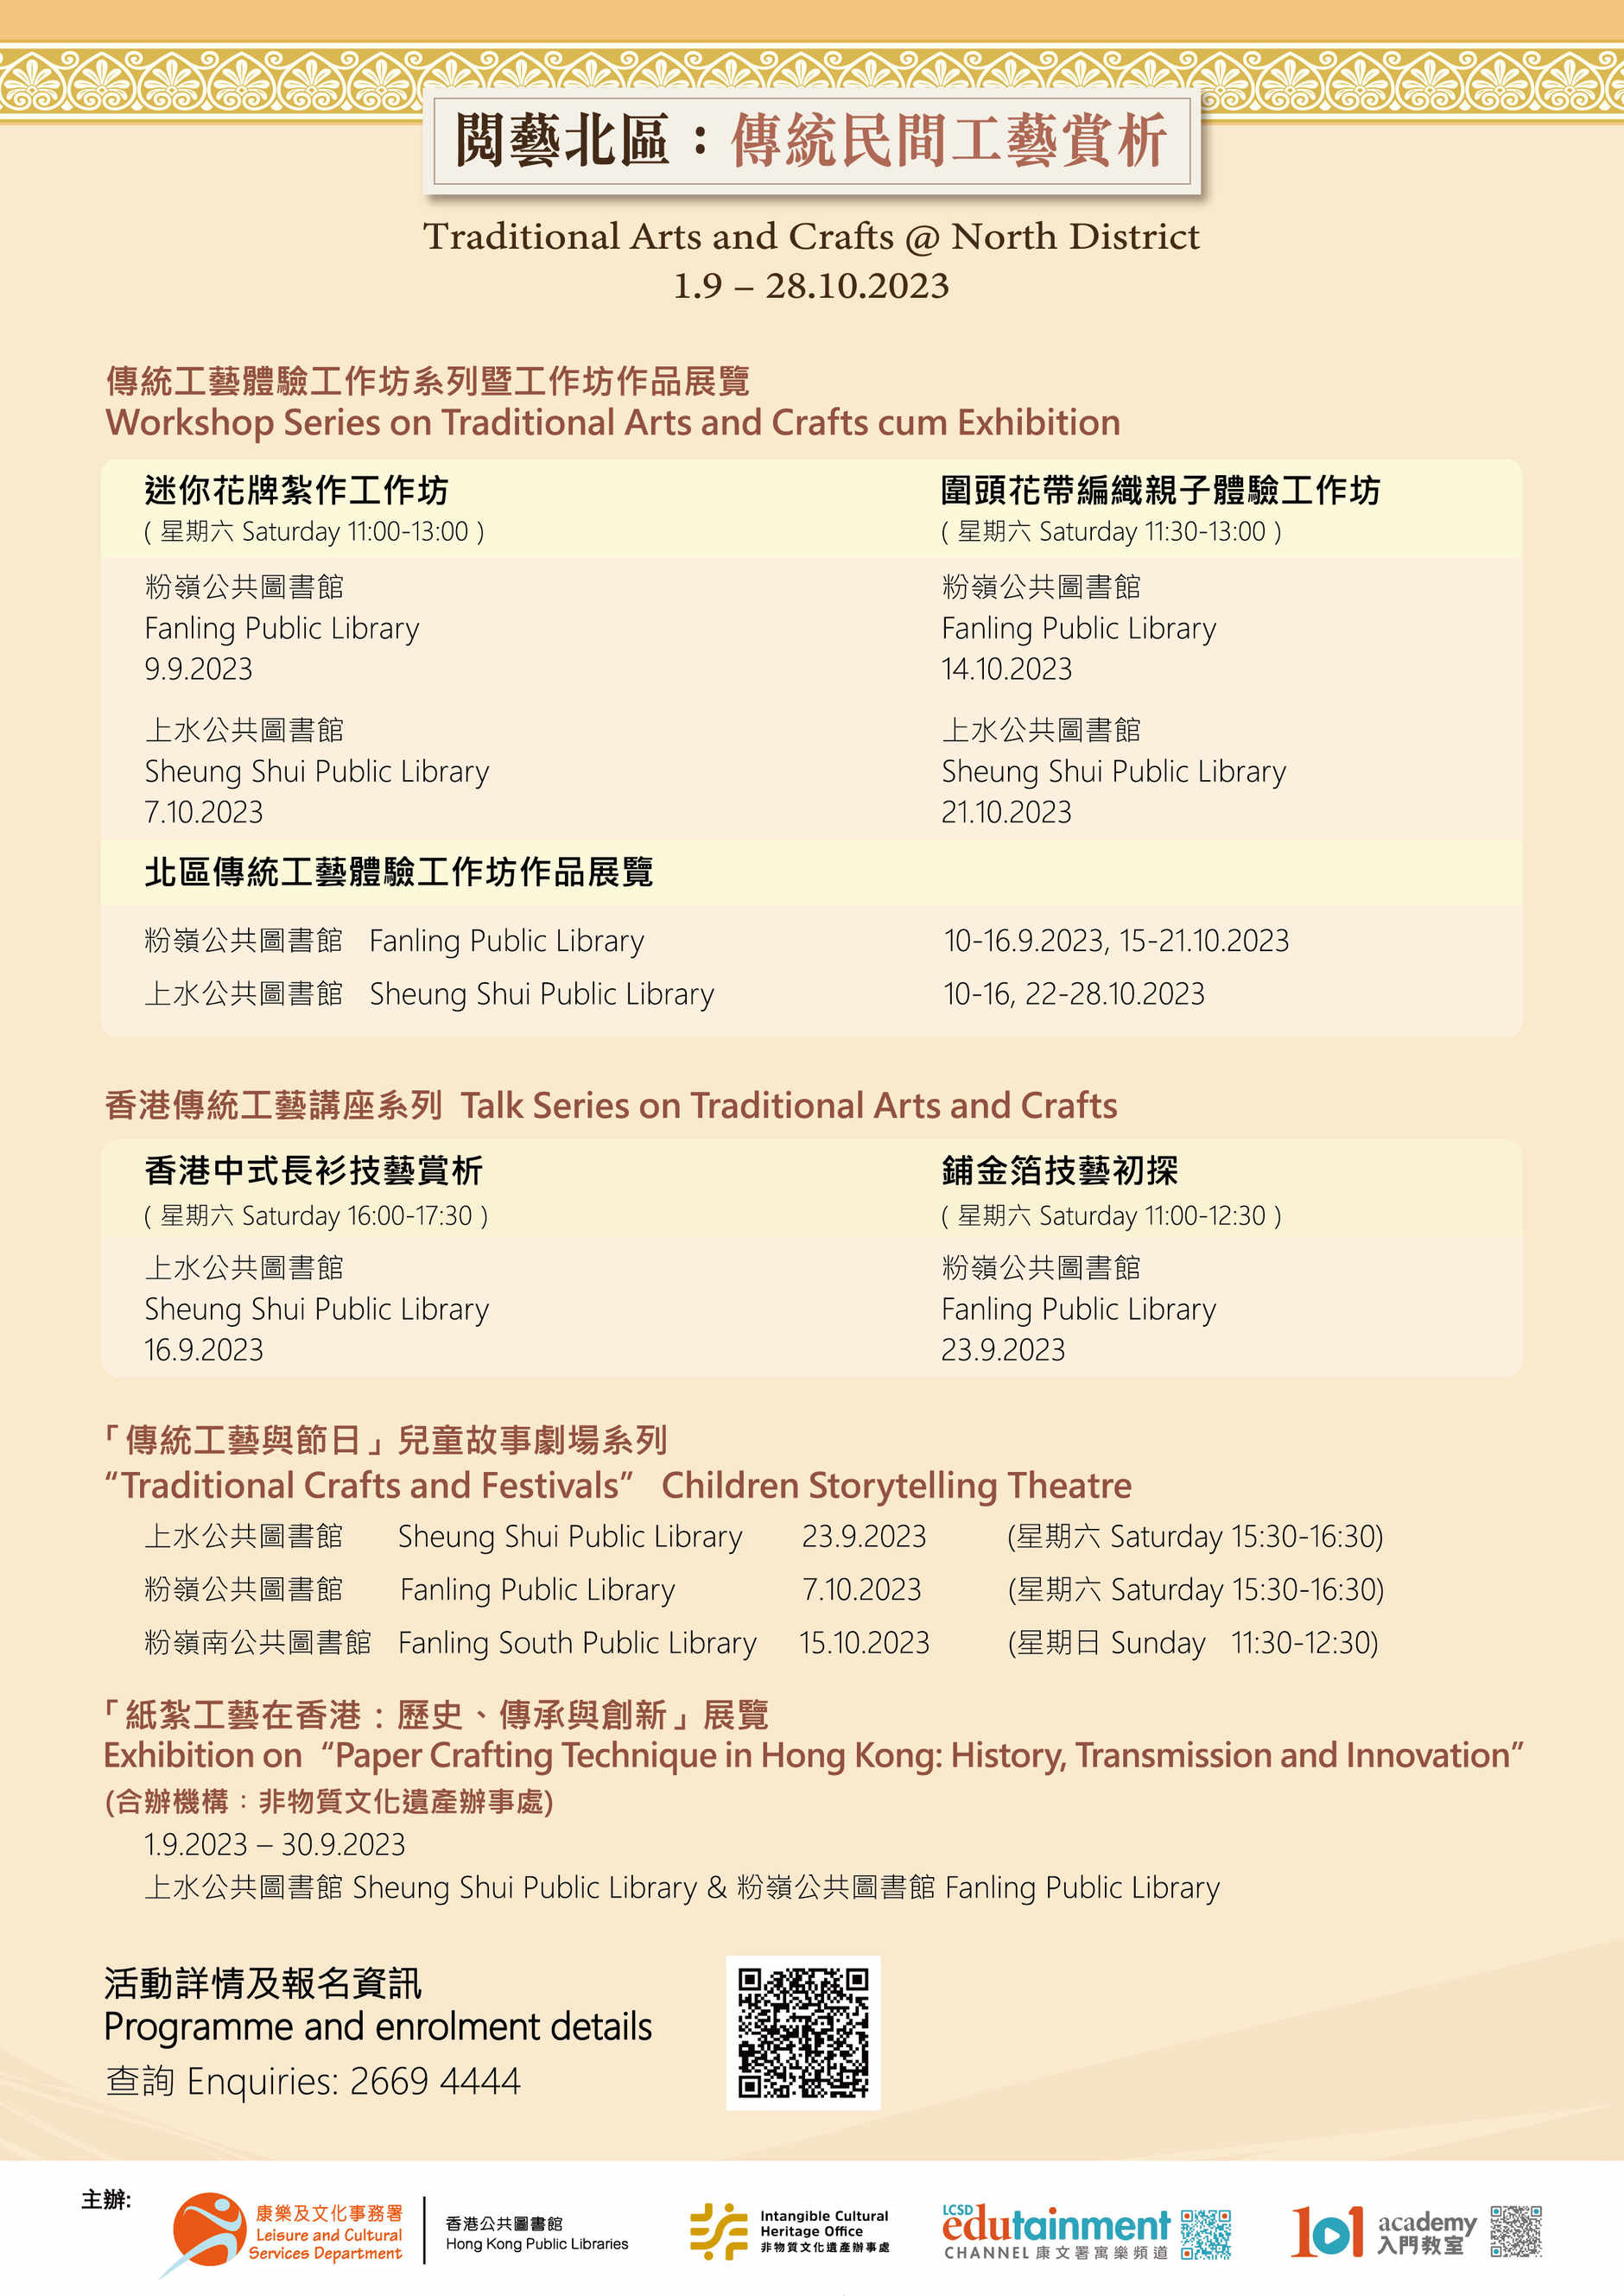 「纸扎工艺在香港：历史丶传承与创新」展览